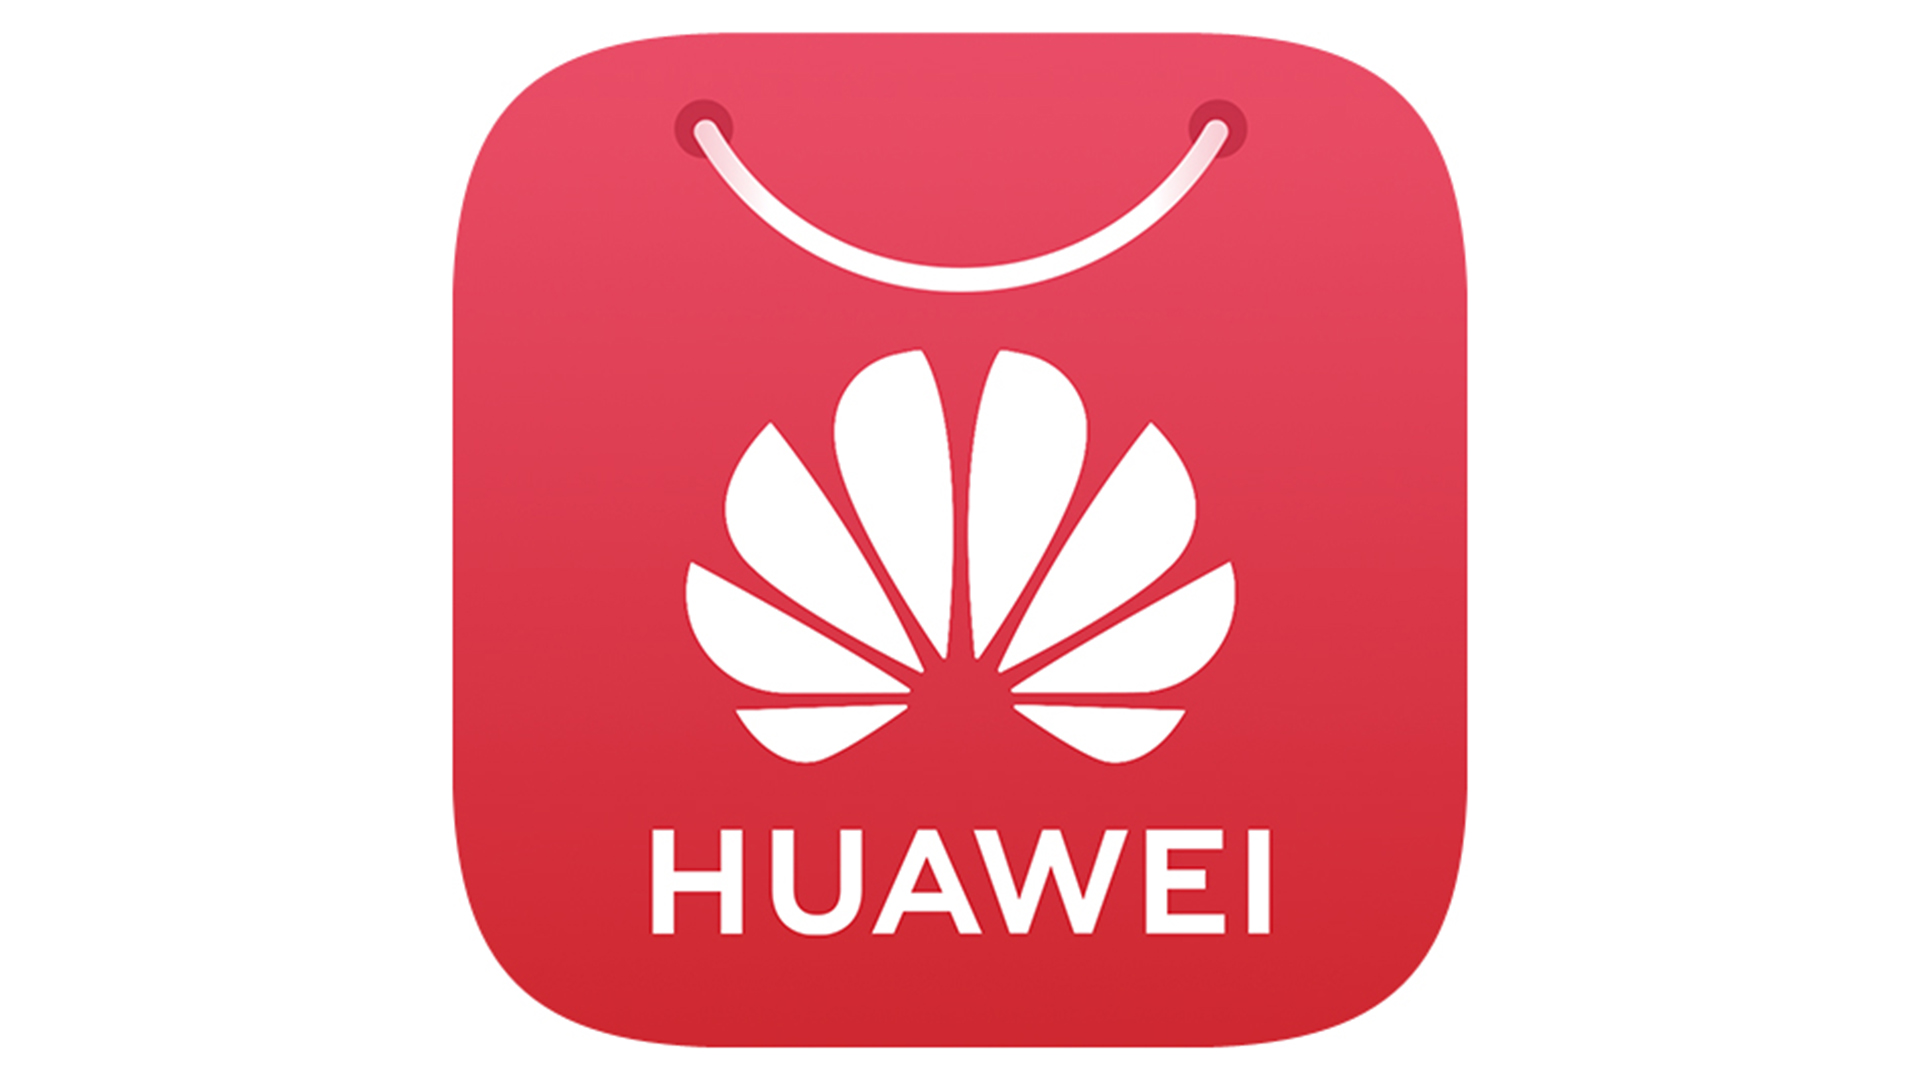 Https appgallery huawei ru. Huawei. Значок Хуавей. Логотип Huawei app Gallery. Магазин приложений Huawei APPGALLERY.